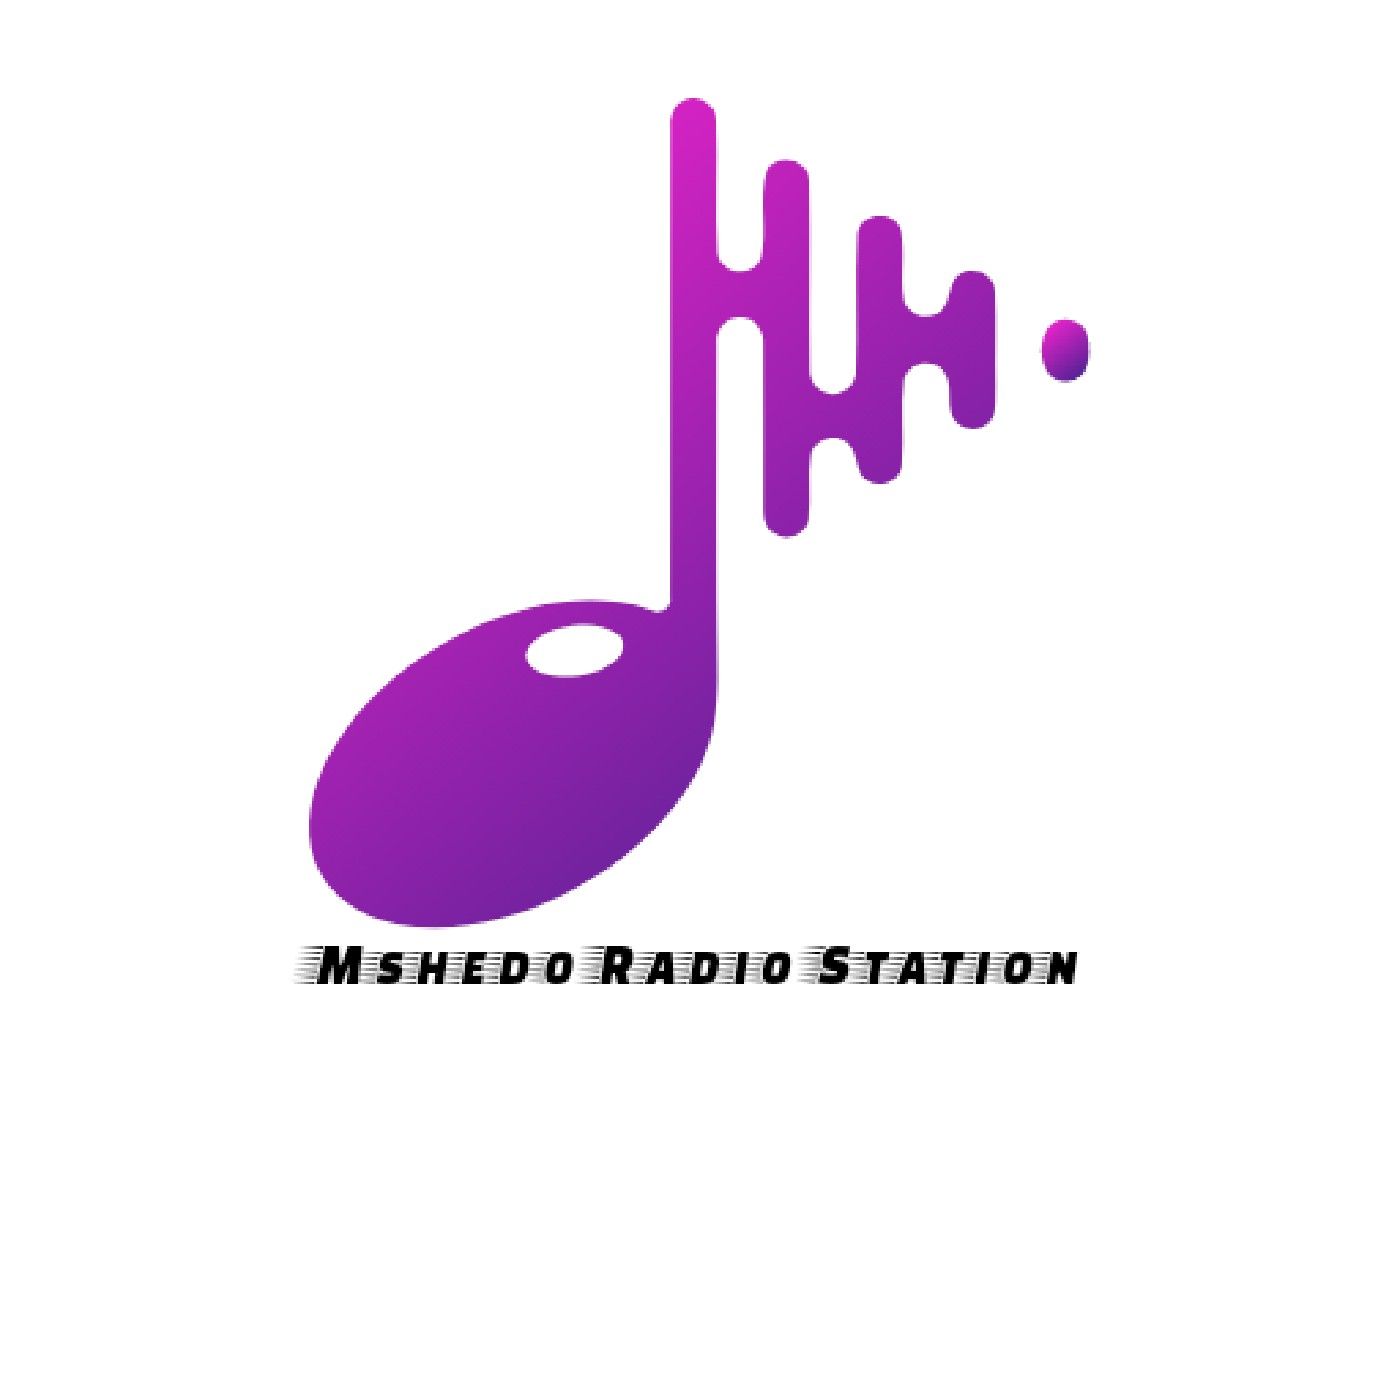 Episode 21 - Mshedo FM